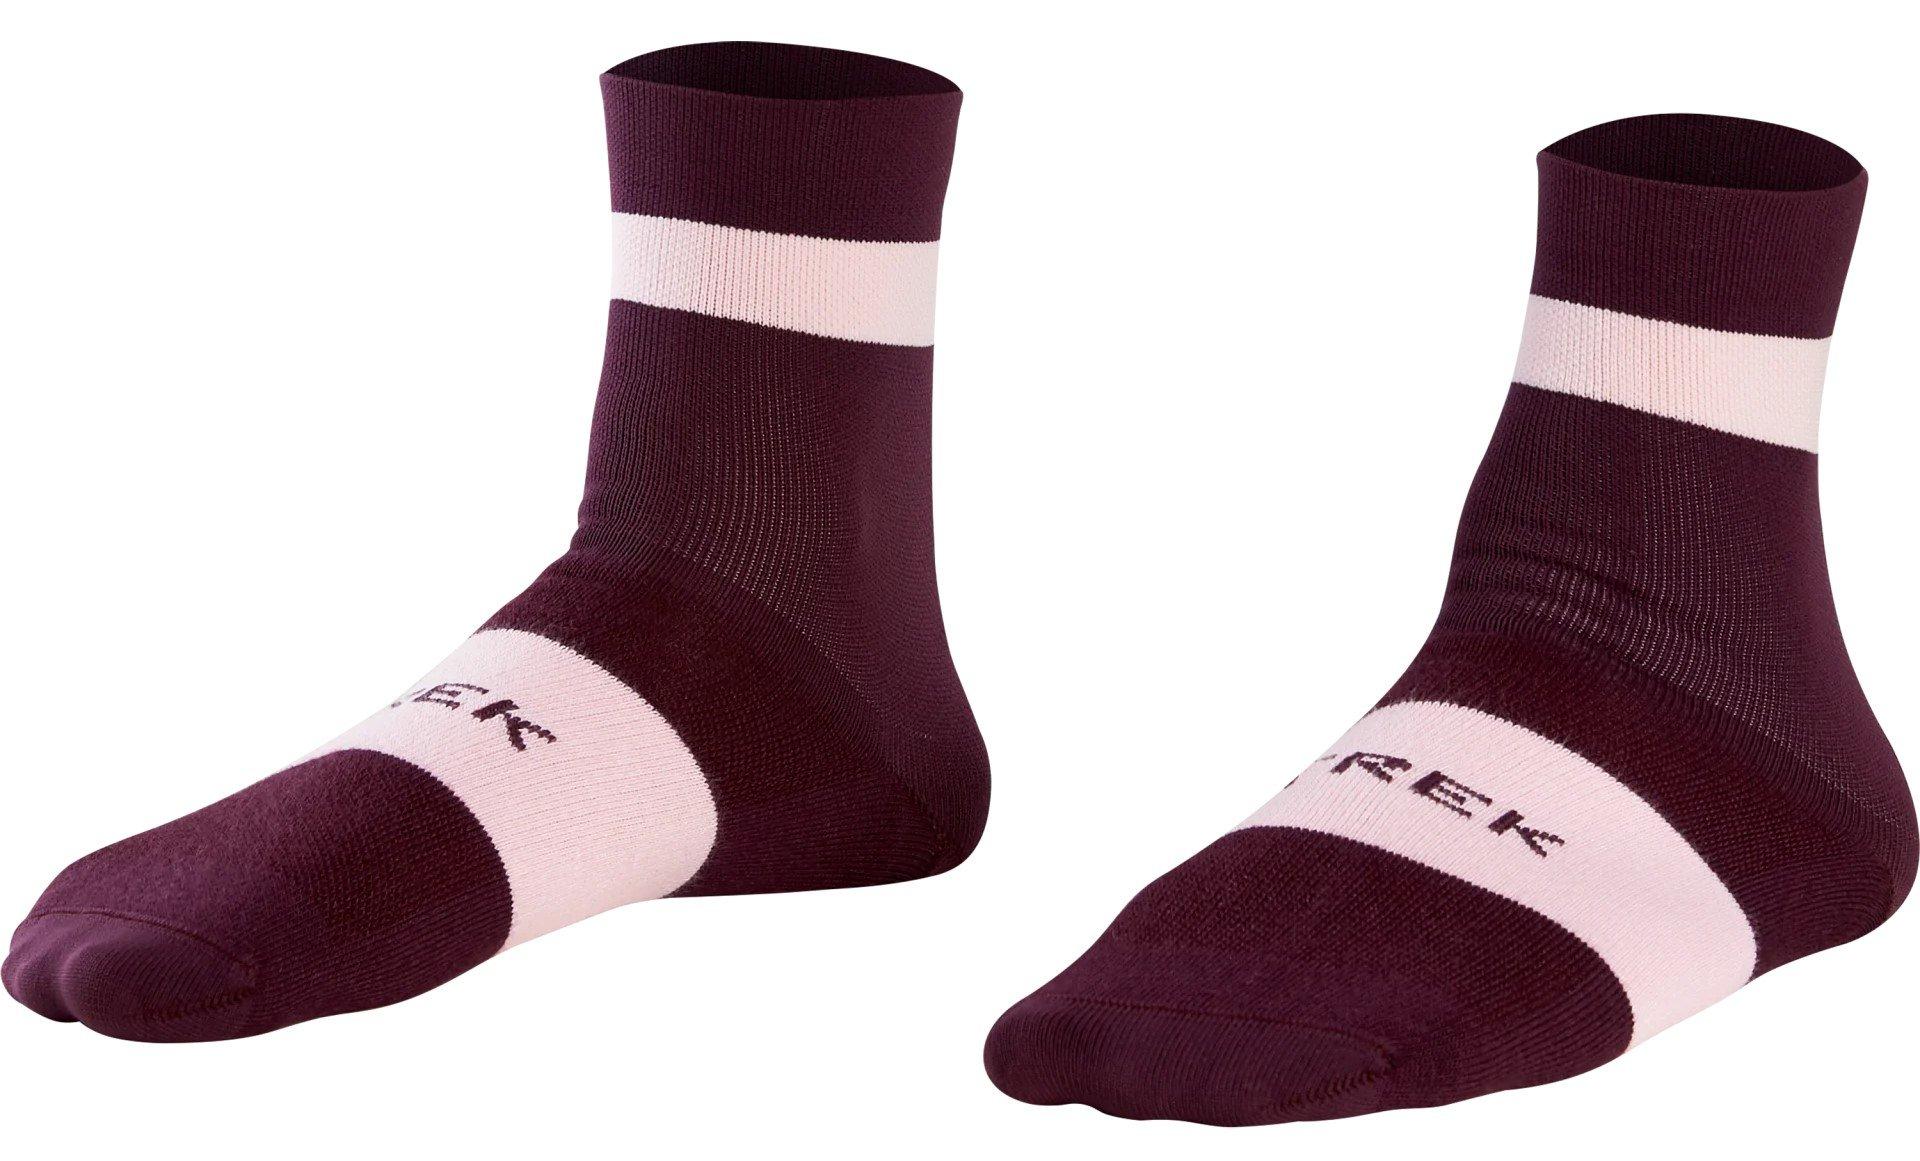 Kompresná podpora pre lýtka Trek Race Quarter Socks Veľkosť: 39-41 EUR